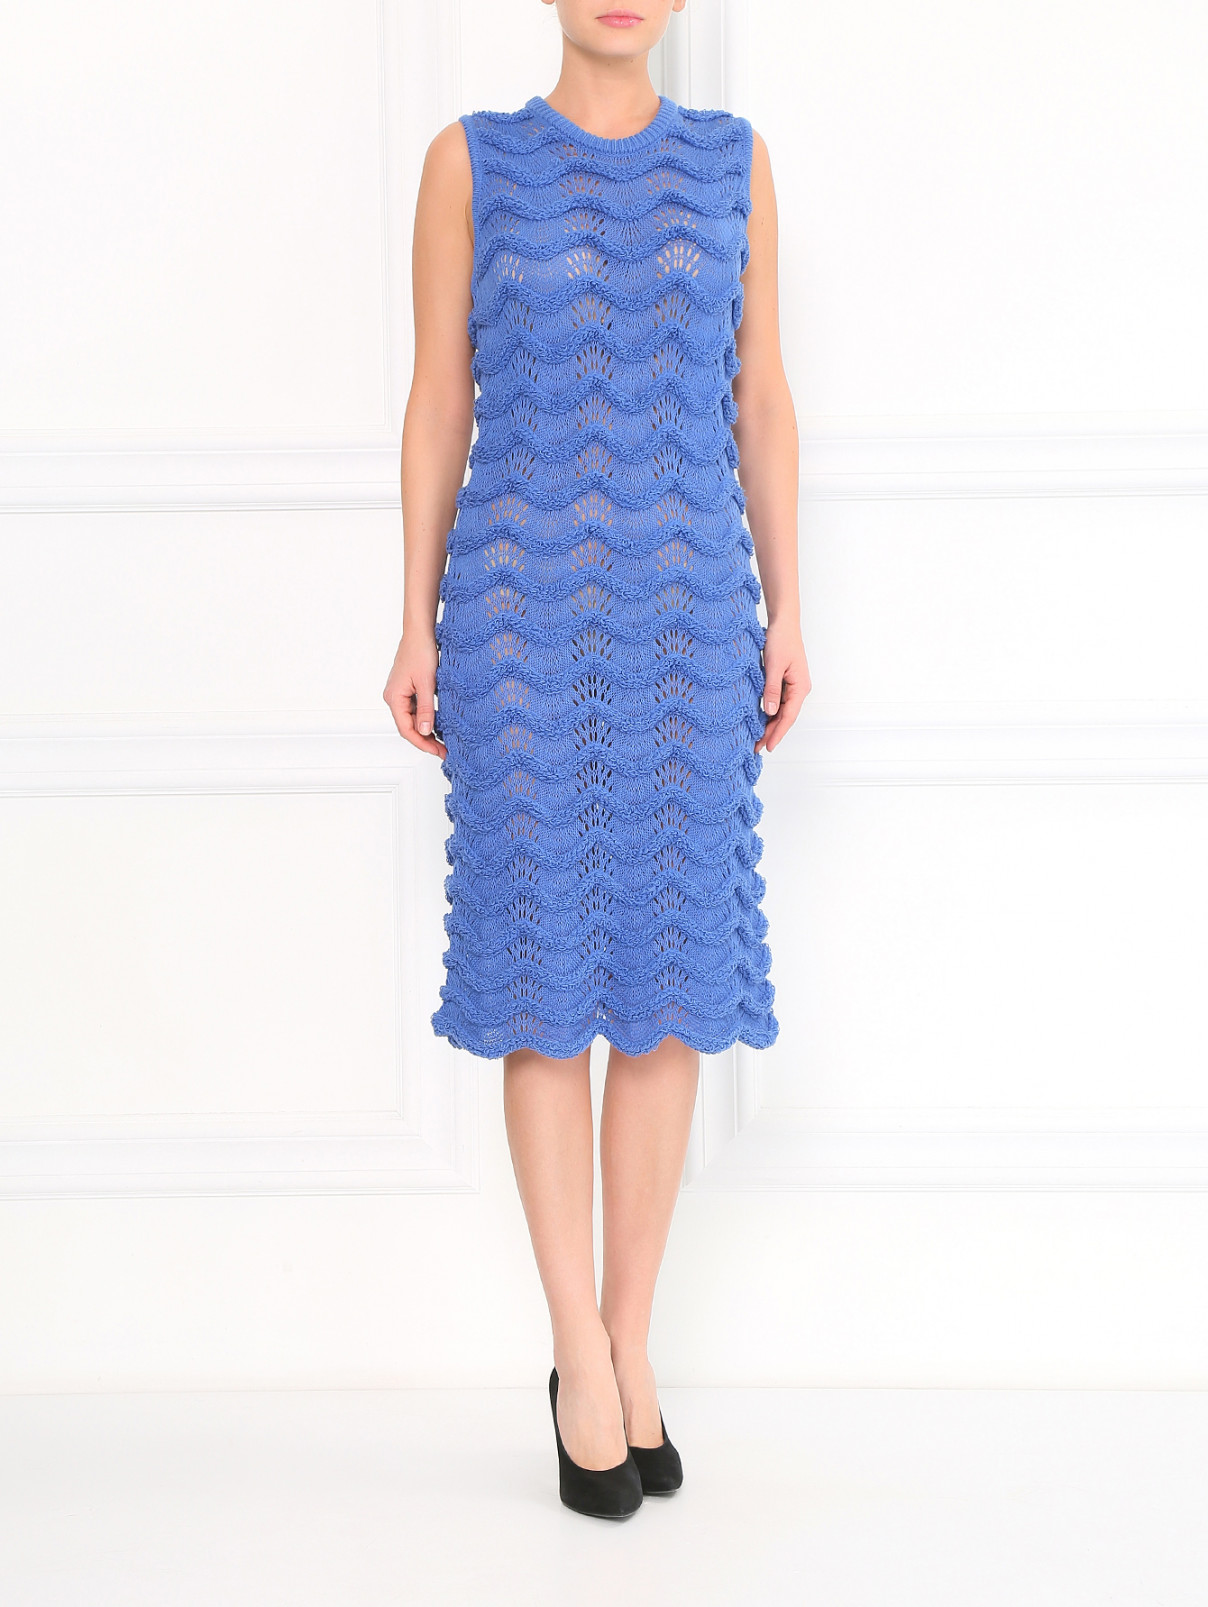 Трикотажное платье-футляр из хлопка крупной фактурной вязки Kenzo  –  Модель Общий вид  – Цвет:  Синий